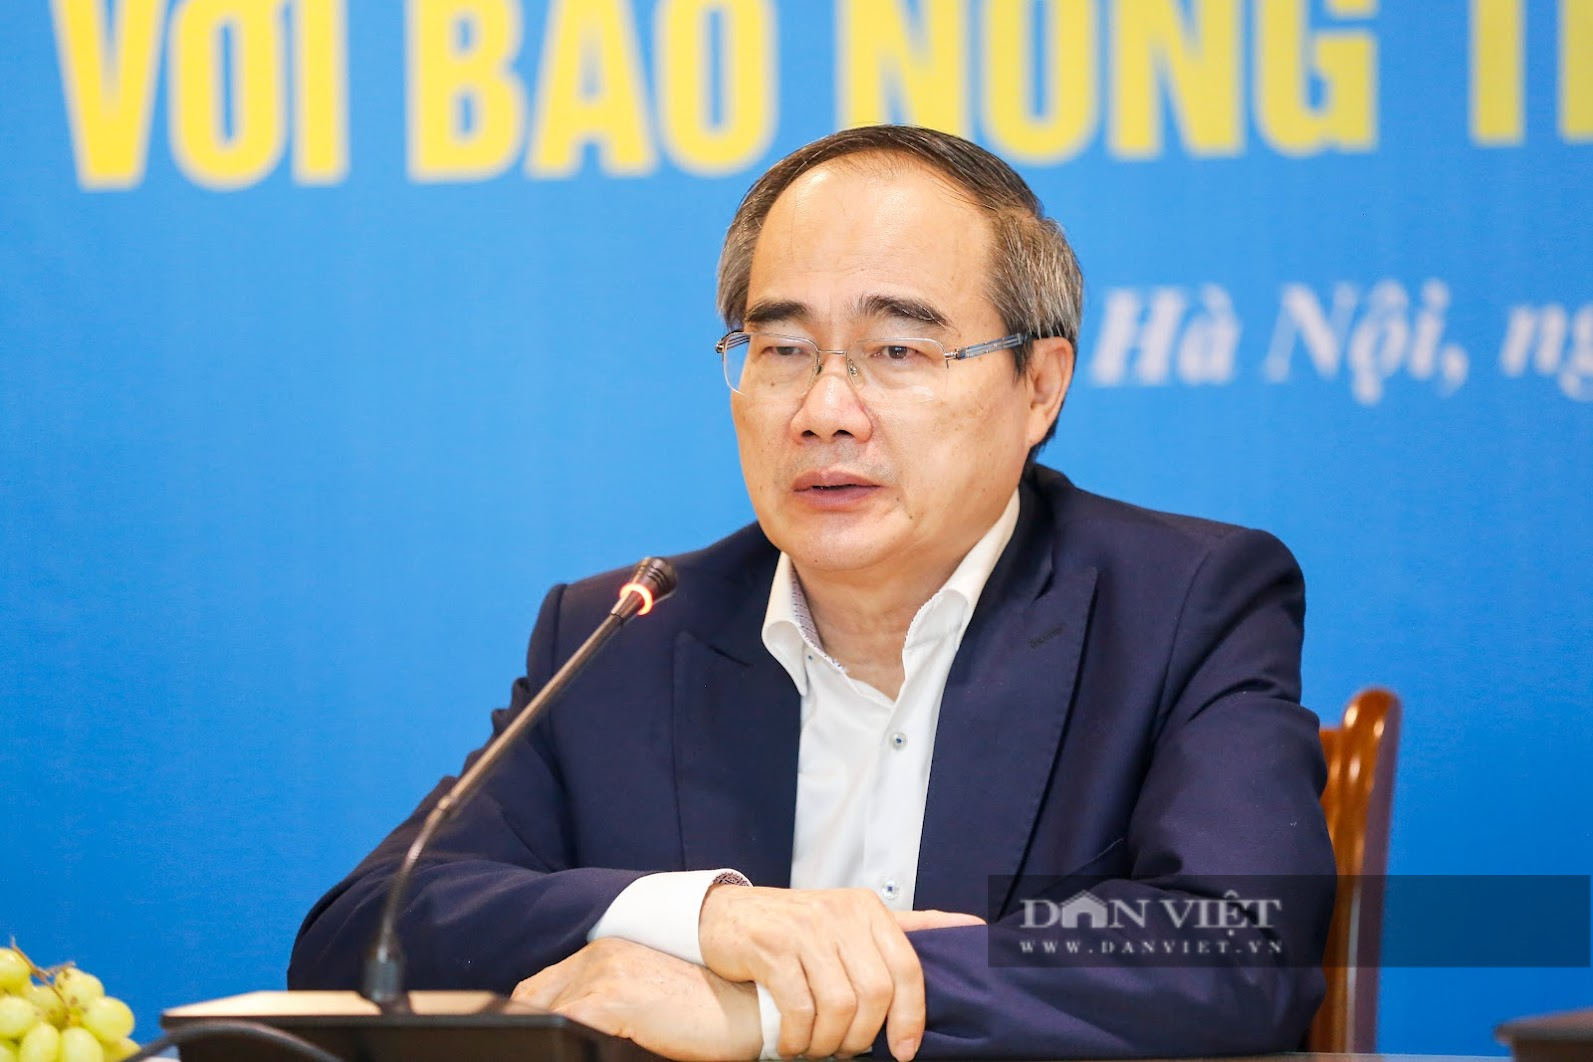 Nguyên Ủy viên Bộ Chính trị, ĐBQH Nguyễn Thiện Nhân lên tiếng về loạt bài quy hoạch nuôi ngao thụt lùi ở Hải Phòng - Ảnh 1.